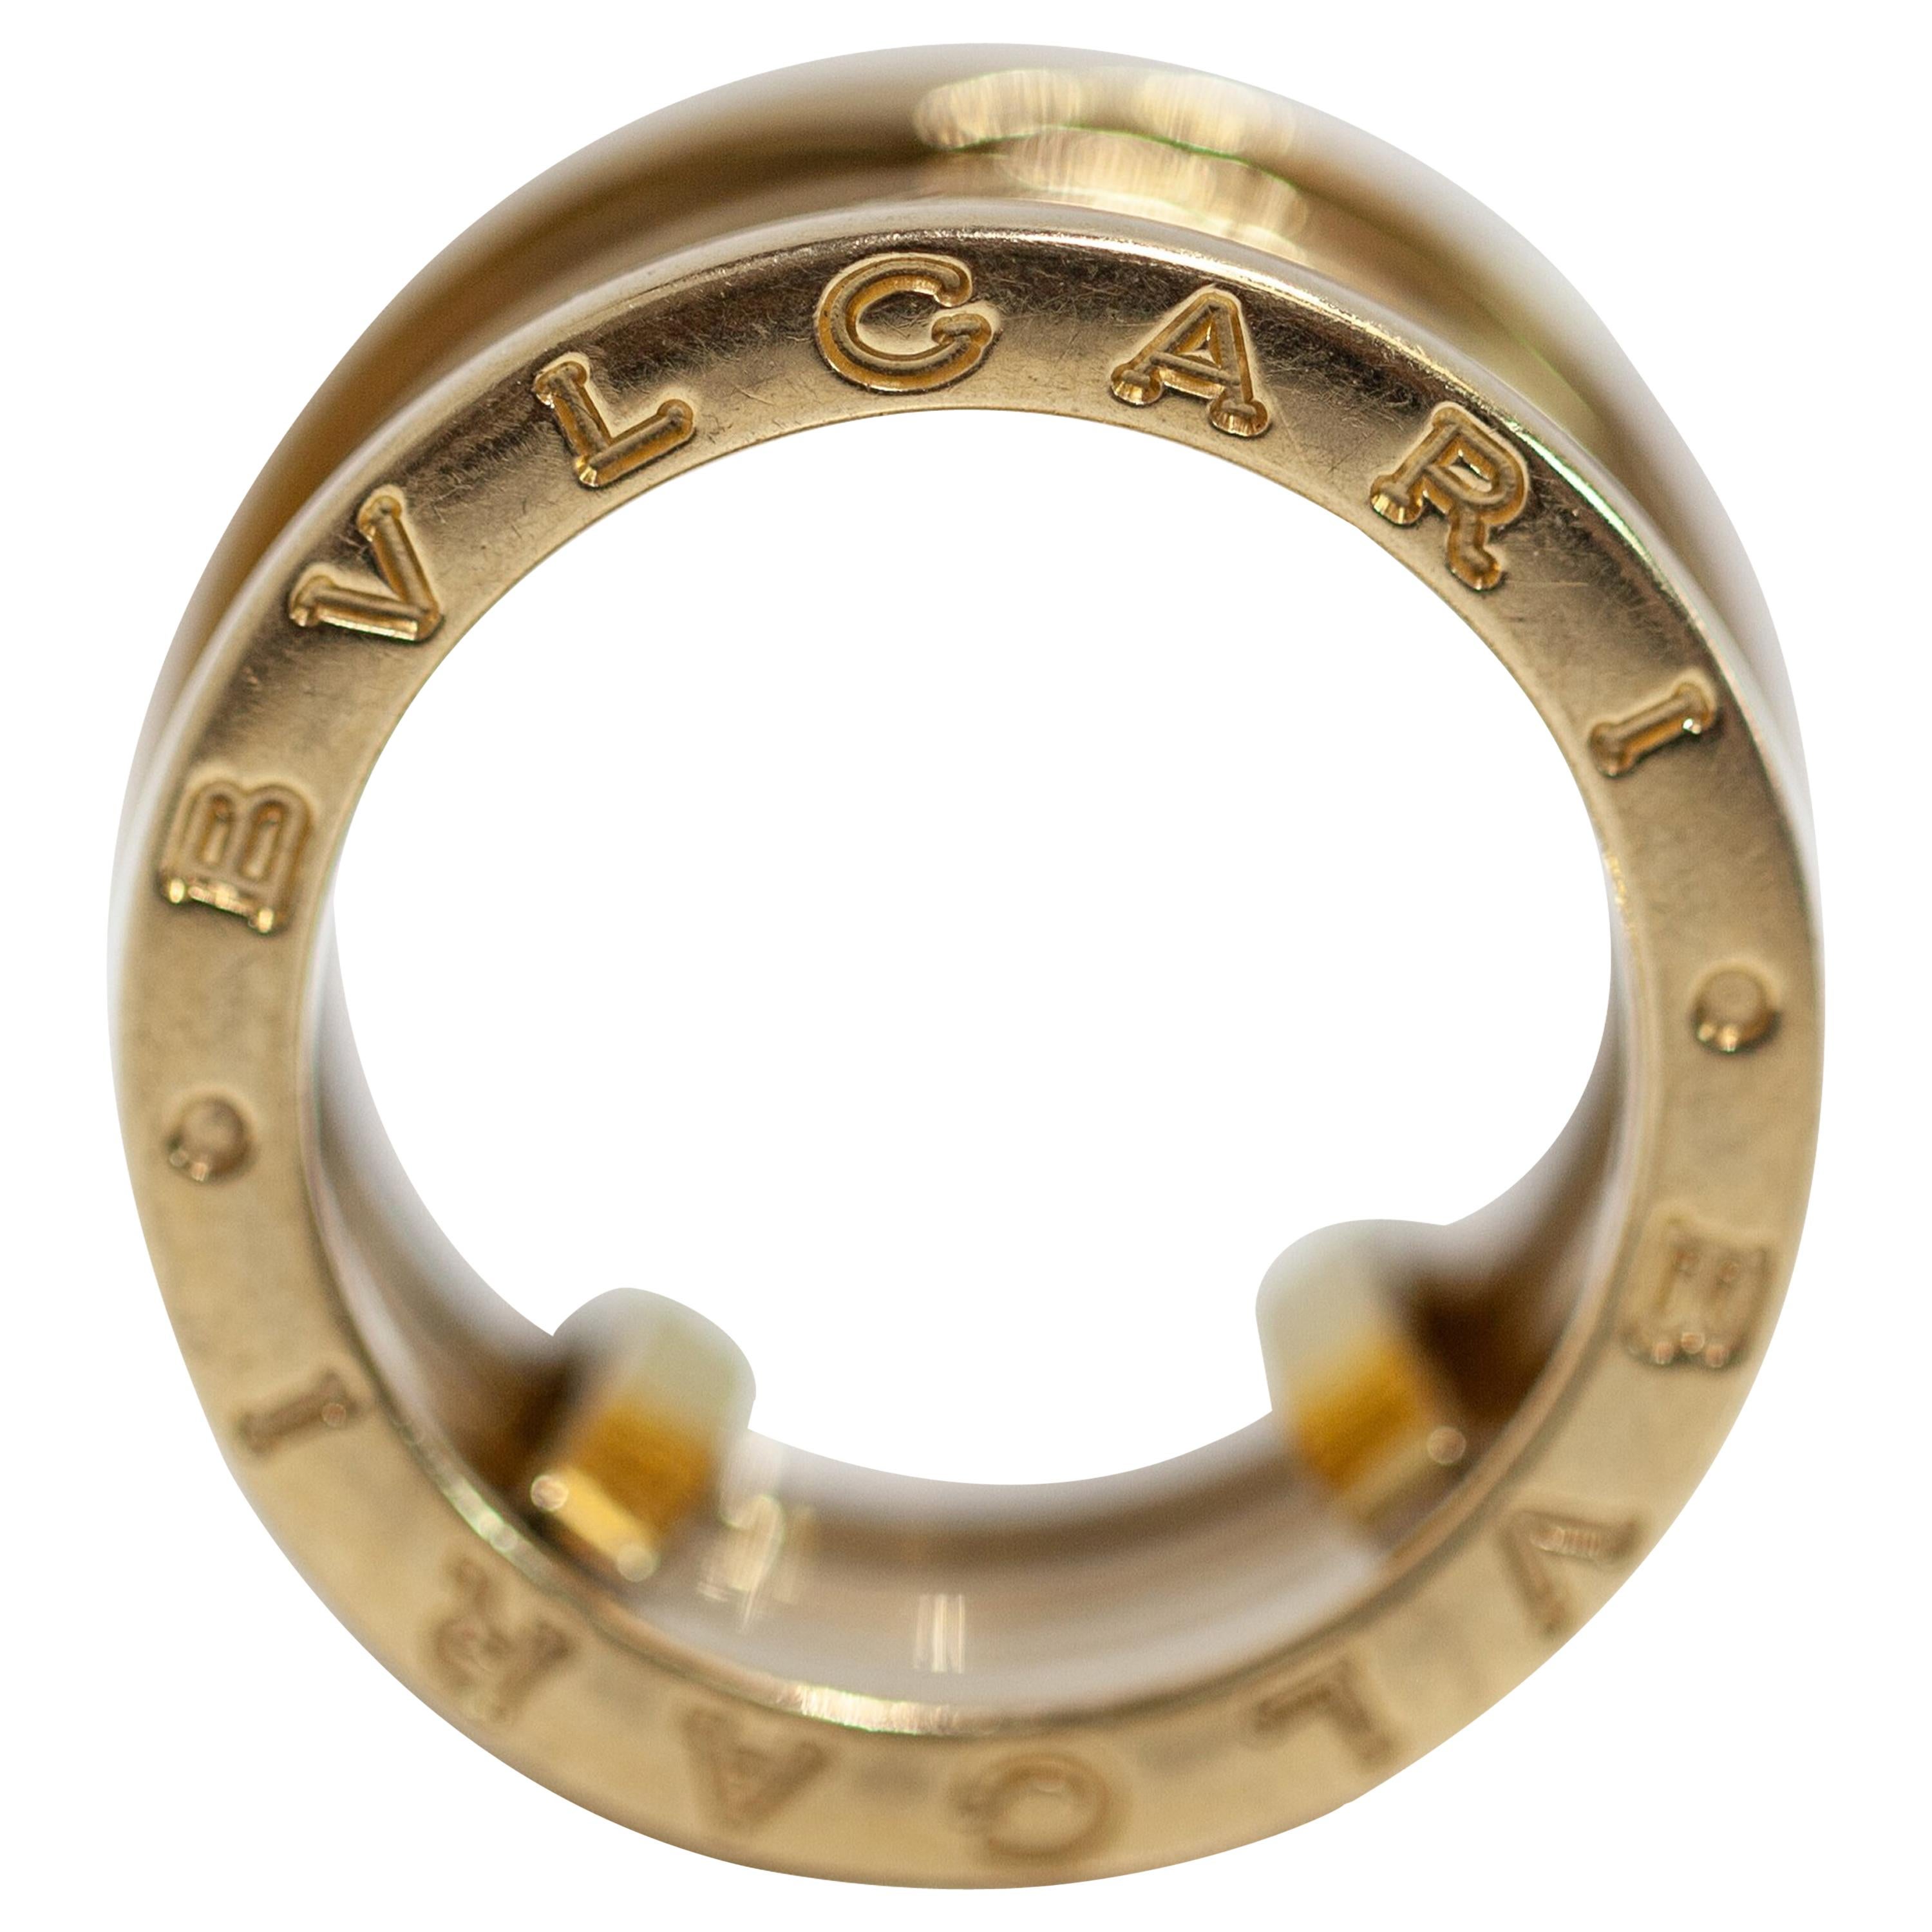 Bvlgari B Zero 1 Design 18 Karat Yellow Gold Four Band Ring